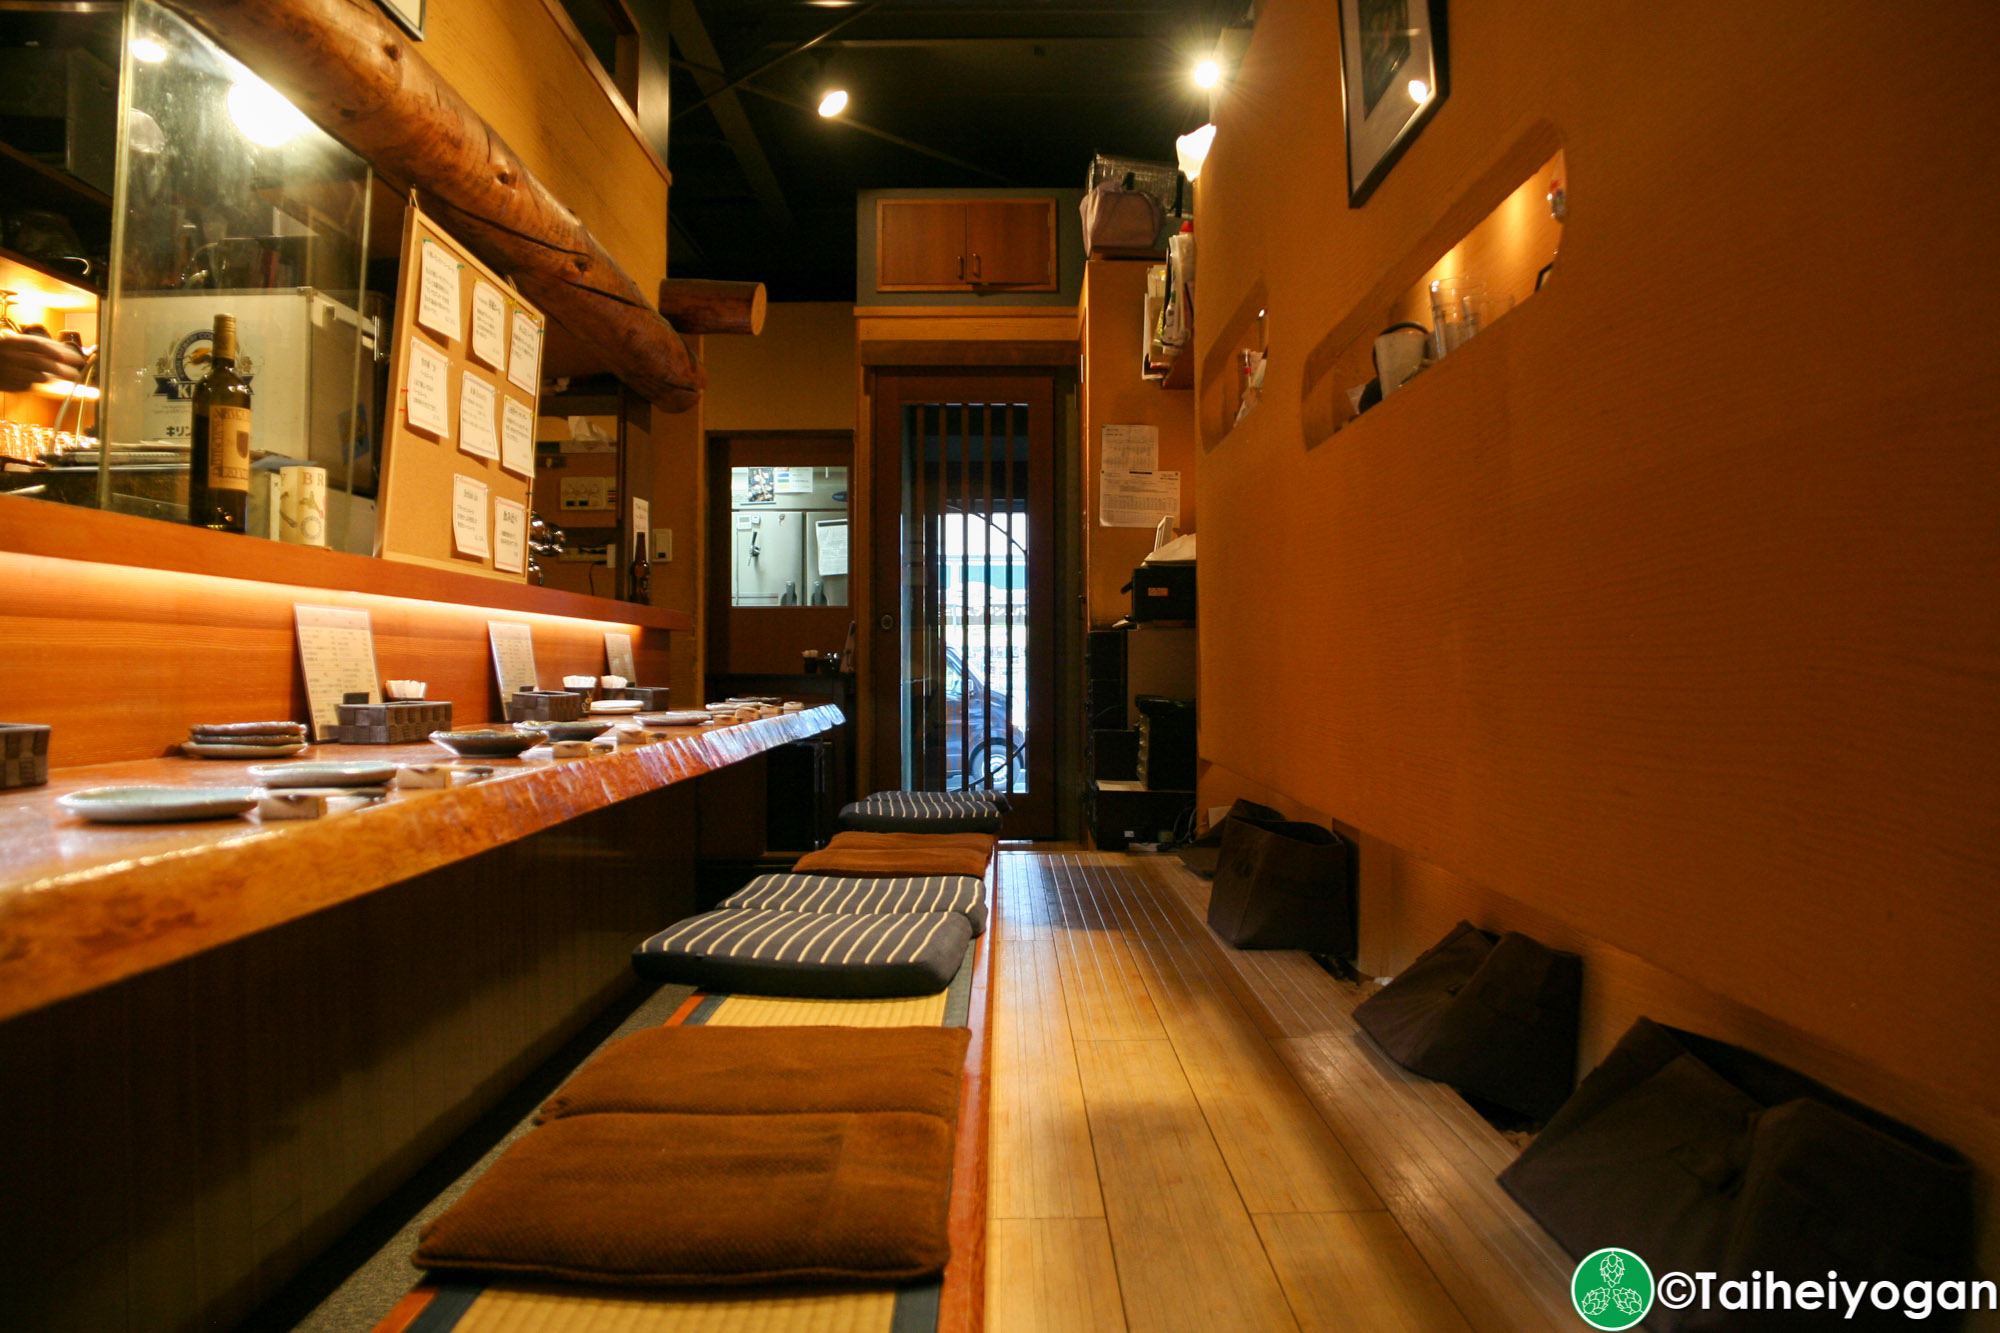 横濱金沢ブルワリーLa Fusion・Yokohama Kanazawa Brewery - La Fusion - Interior - Bar Counter Seating